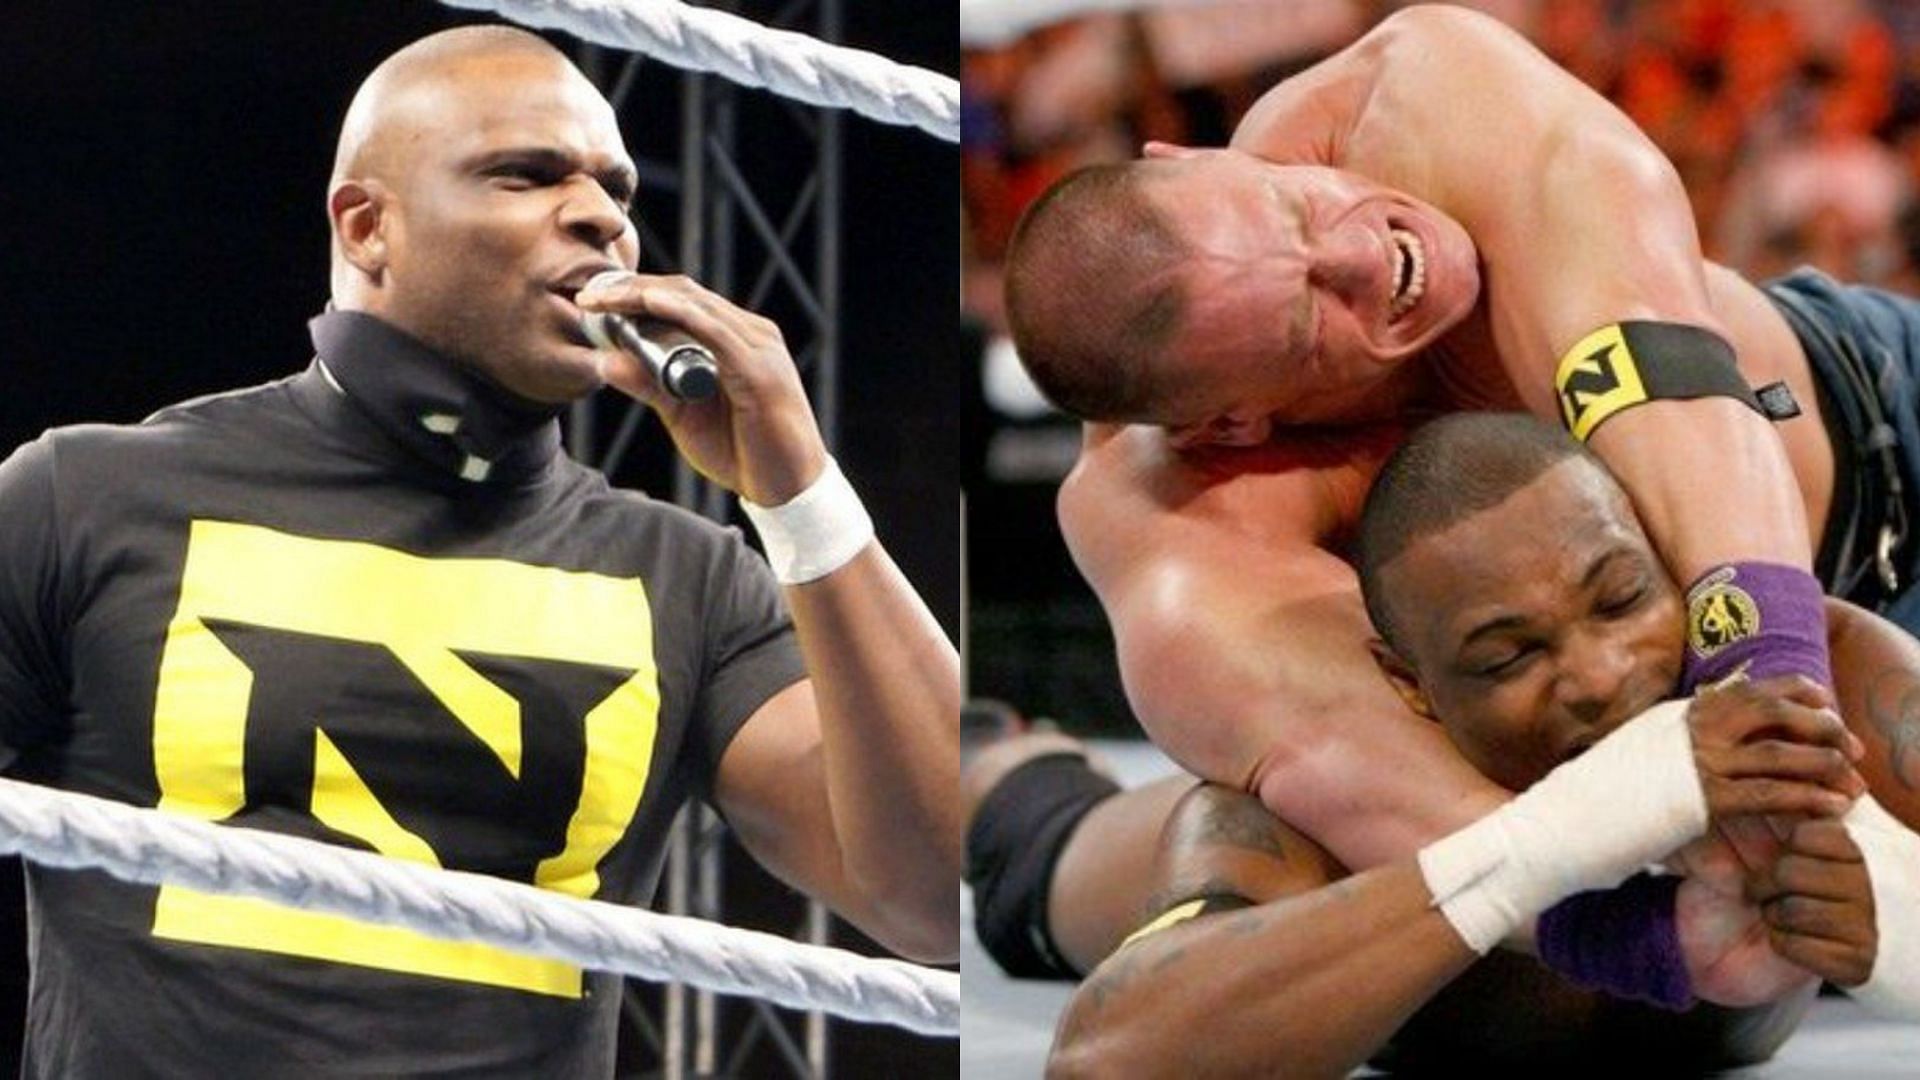 John Cena allegedly targeted Michael Tarver